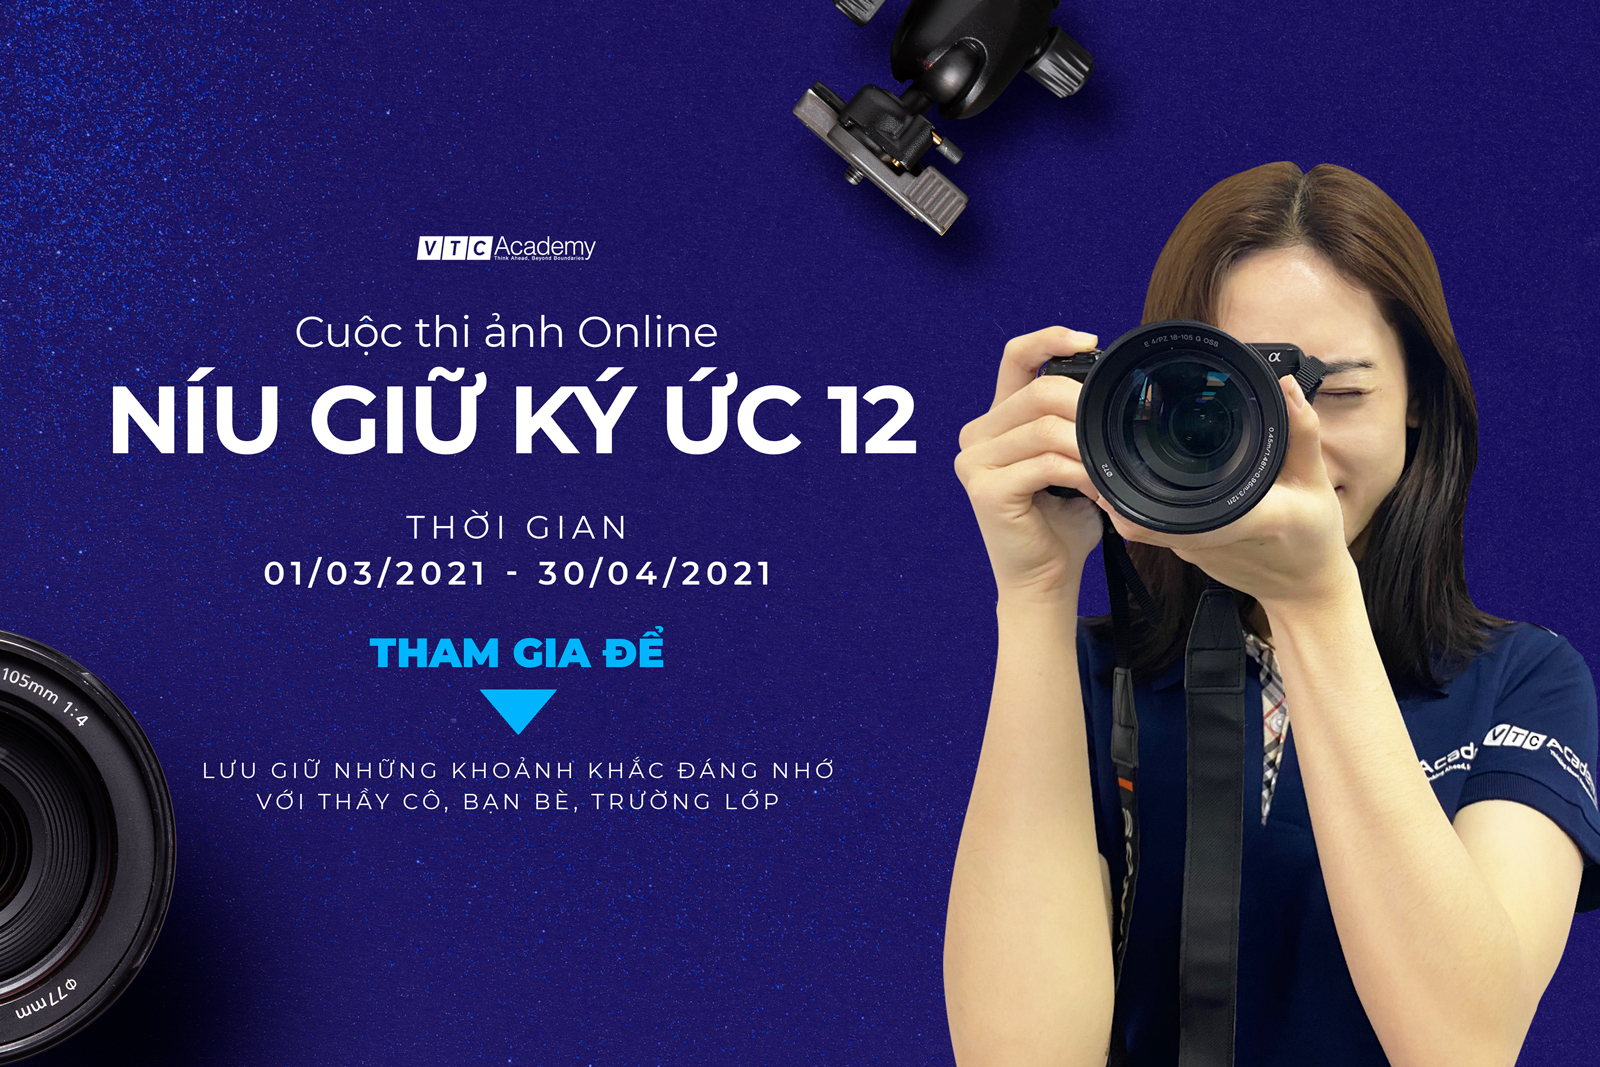 VTC Academy phát động cuộc thi ảnh online “Níu giữ ký ức 12”